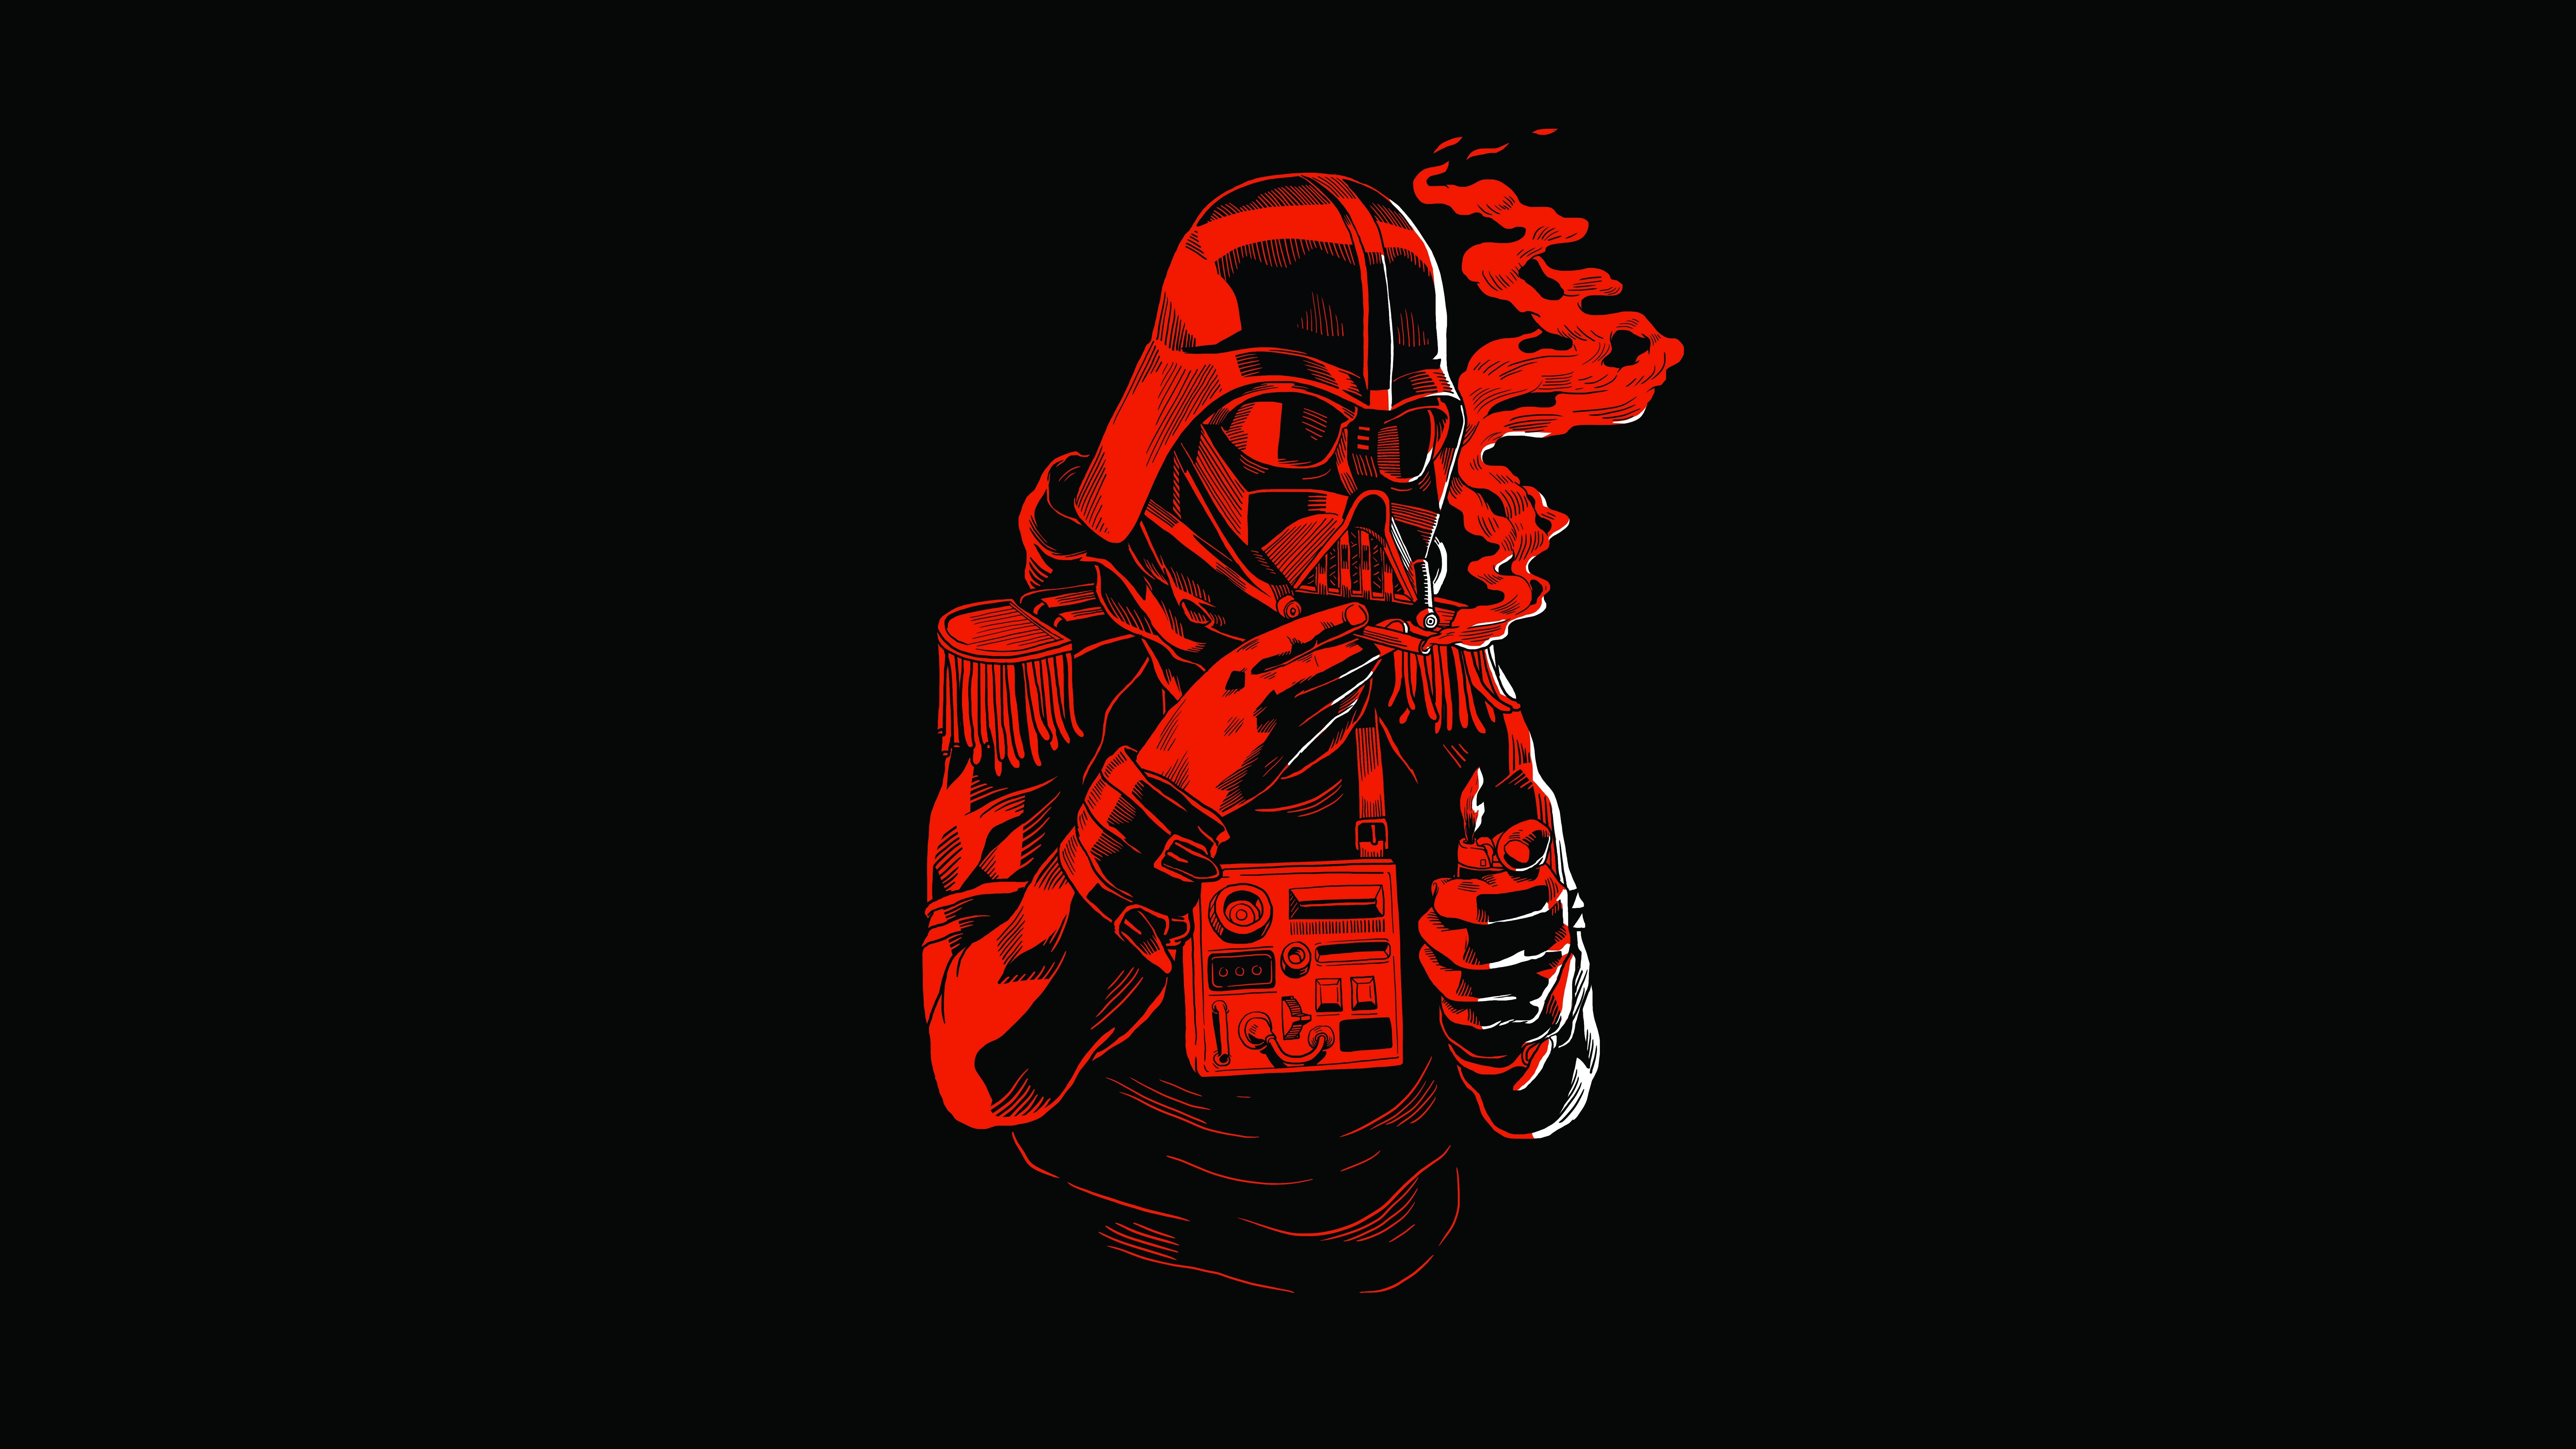 Star Wars Darth Vader Star Wars Humor Artwork Lighter Black Background Simple Background Sith Black  9900x5569